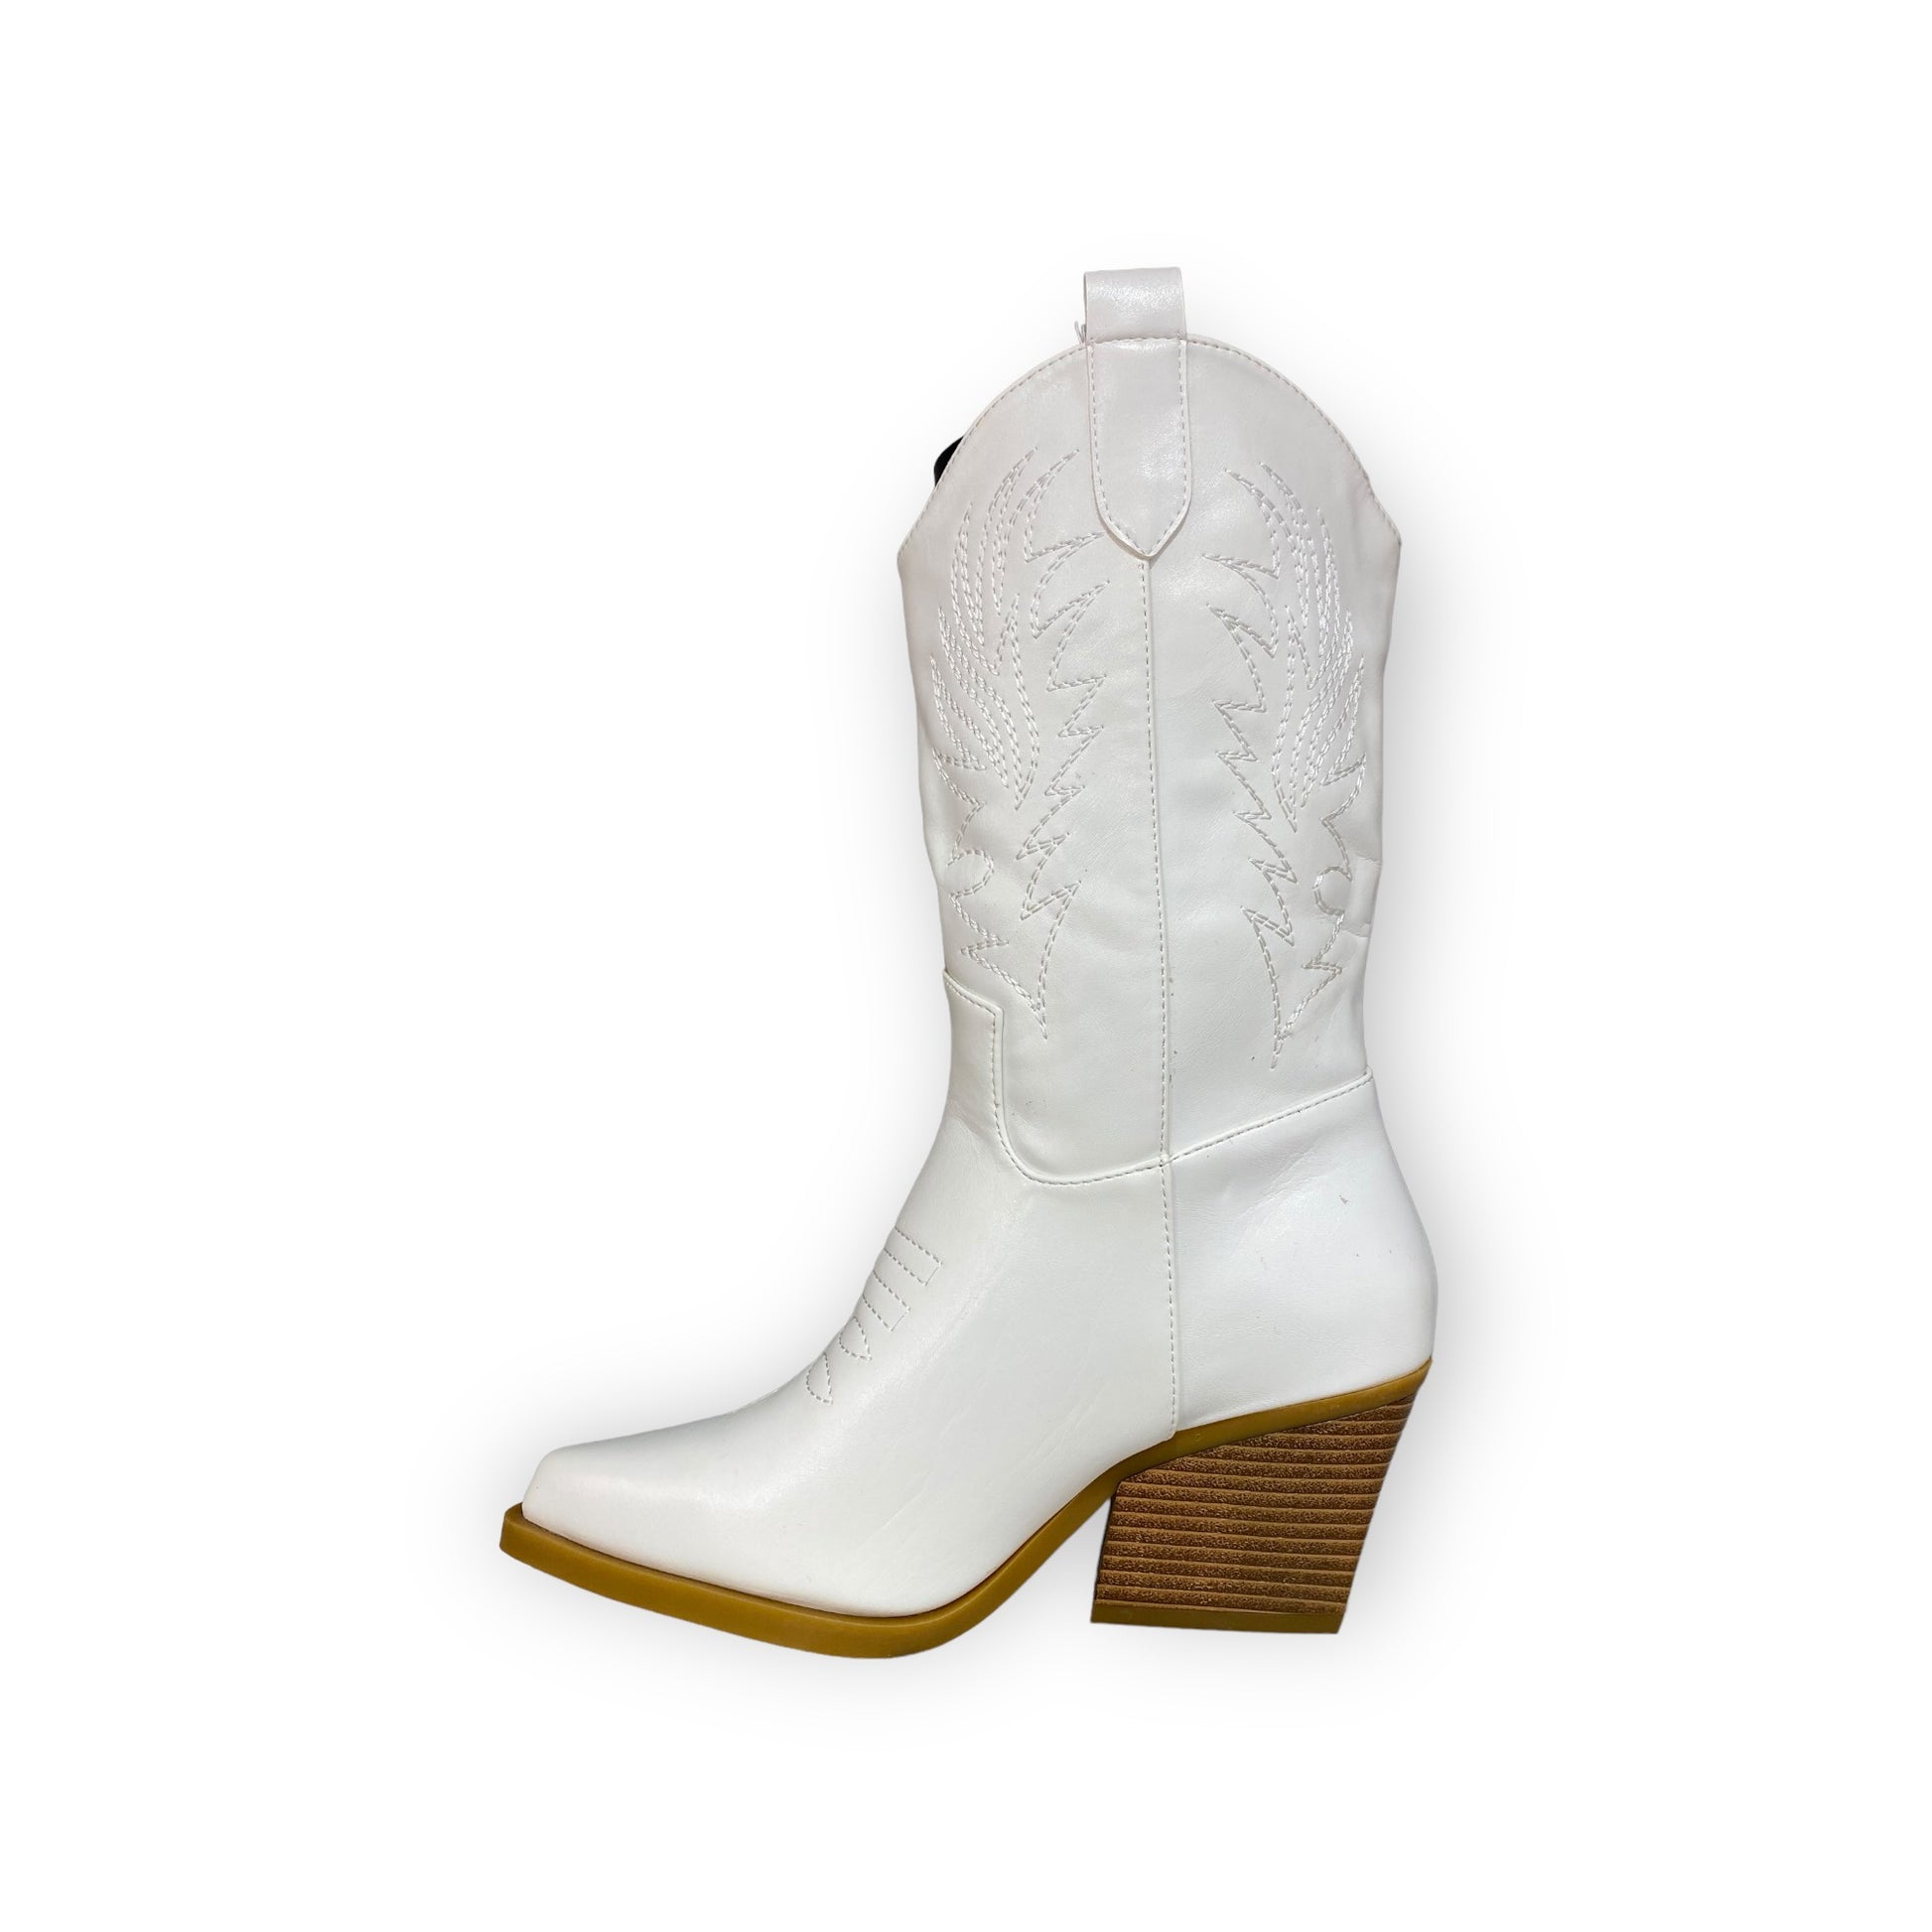 Botas Mujer Vaqueras Texana Cowboy Efe 338502 Piel Blanco